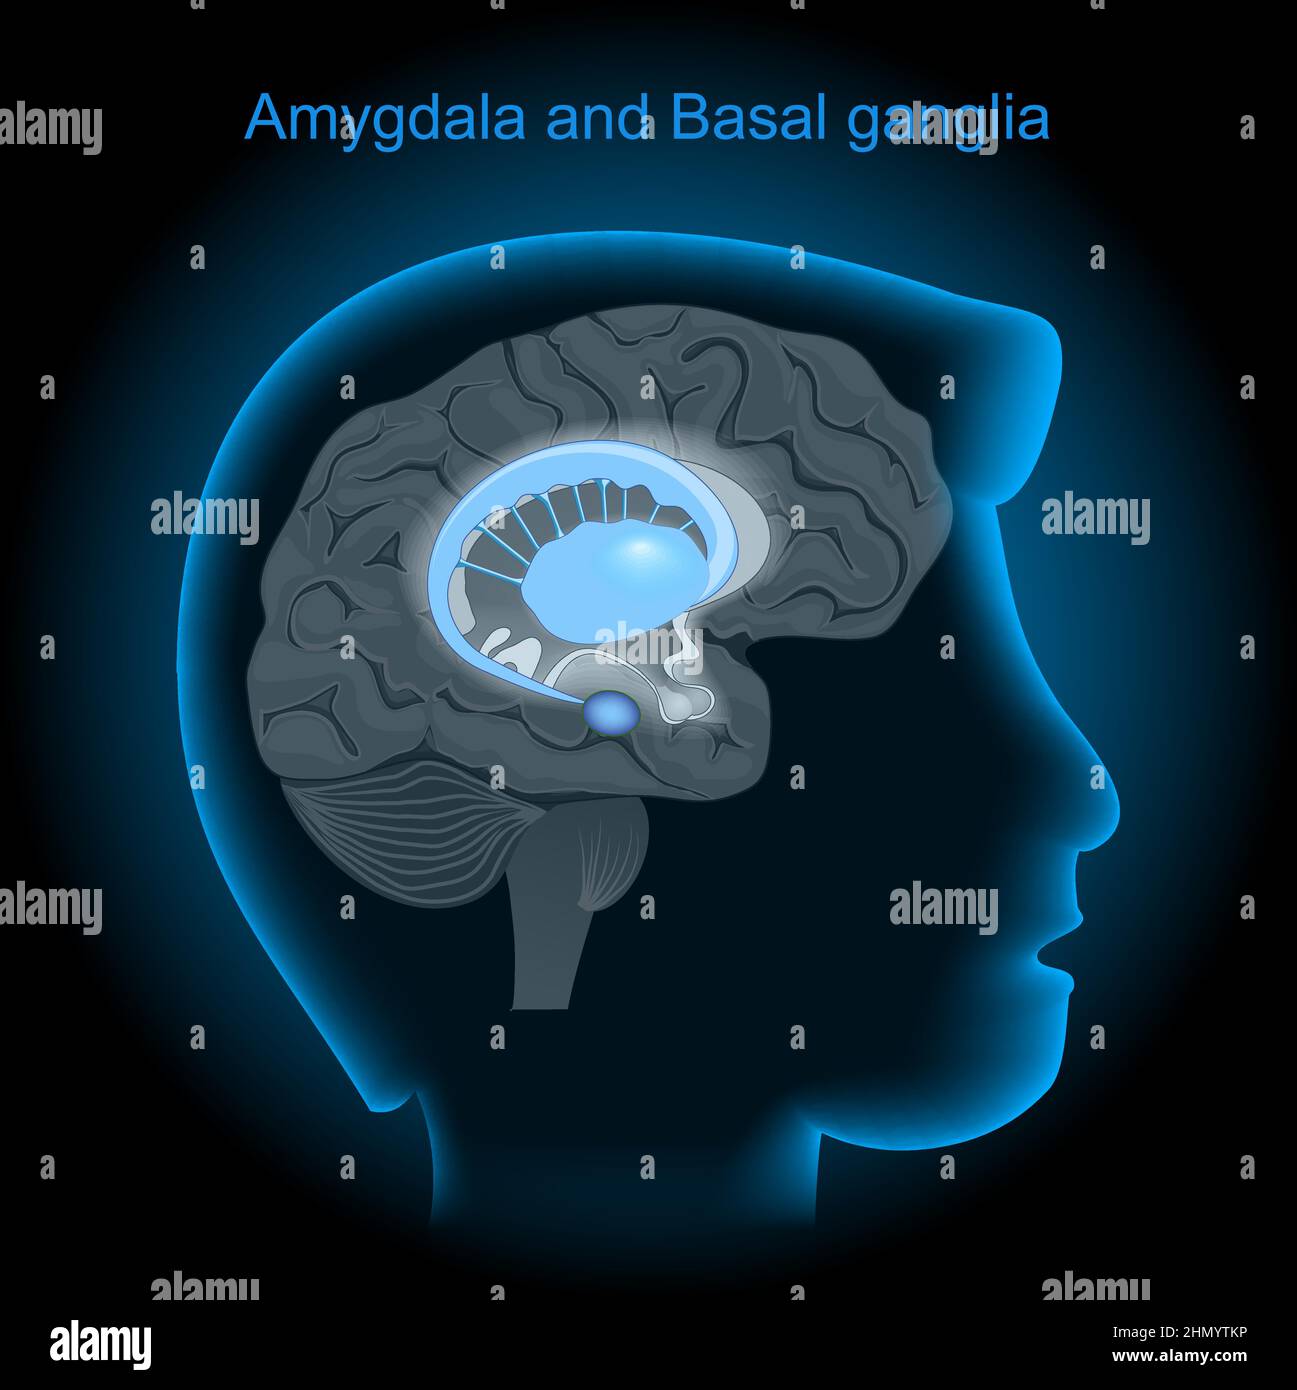 Lage der Amygdalae und der Basalganglien im menschlichen Gehirn. Amygdala und Limbisches System. Kopf des Menschen mit Gehirn auf dunklem Hintergrund. Seitenansicht von b Stock Vektor